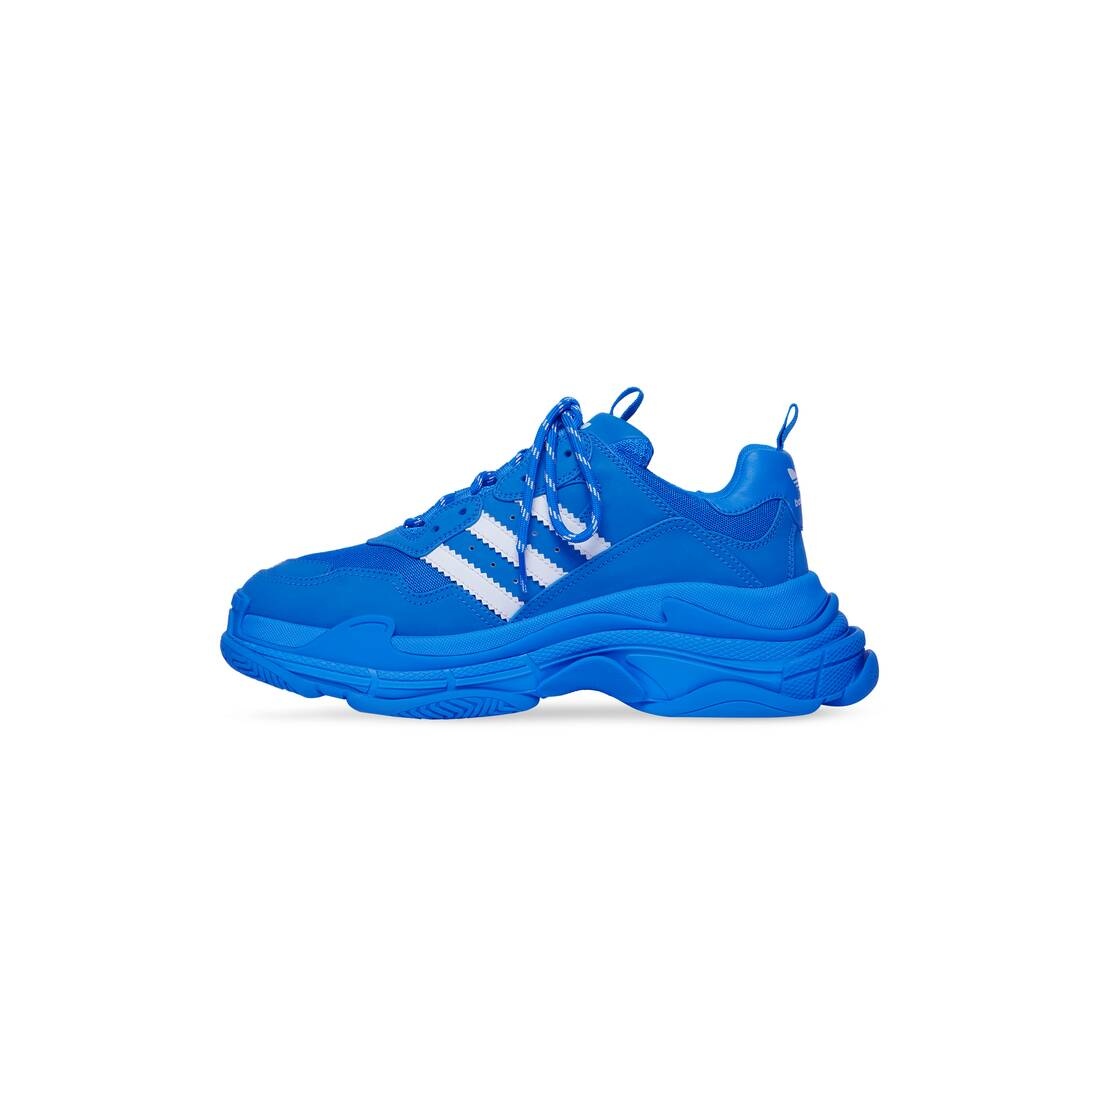 Men's Balenciaga / Adidas Triple S Sneaker in Blue - 4